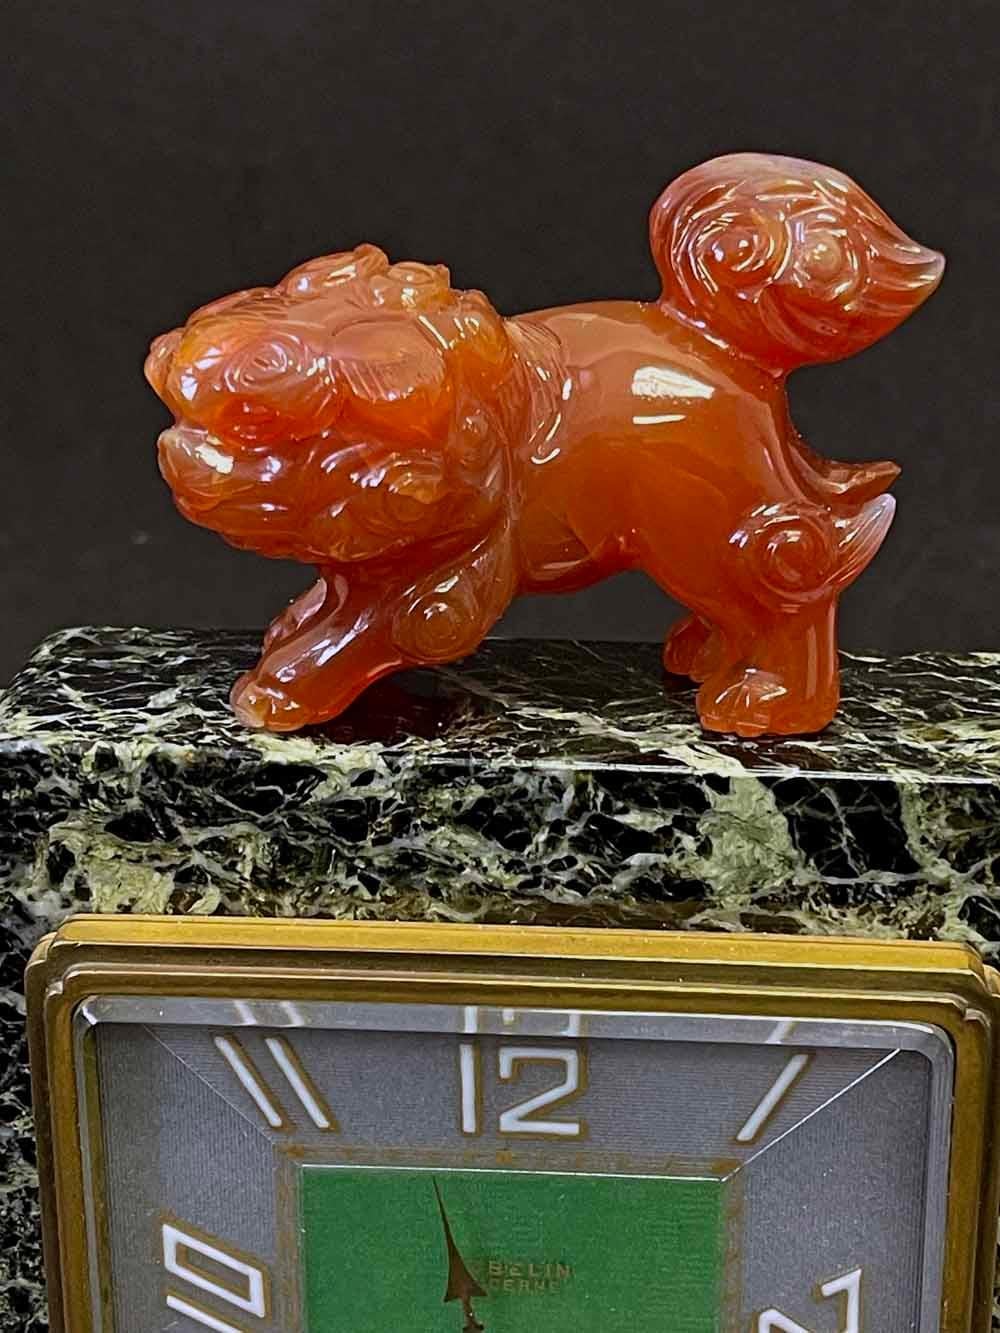 Audacieuse et élégante, cette rare - peut-être unique - horloge de table Art déco de style chinois, réalisée par la célèbre maison Gübelin en Suisse, est une proche cousine des horloges rarissimes produites par Cartier à la même époque.  Comme